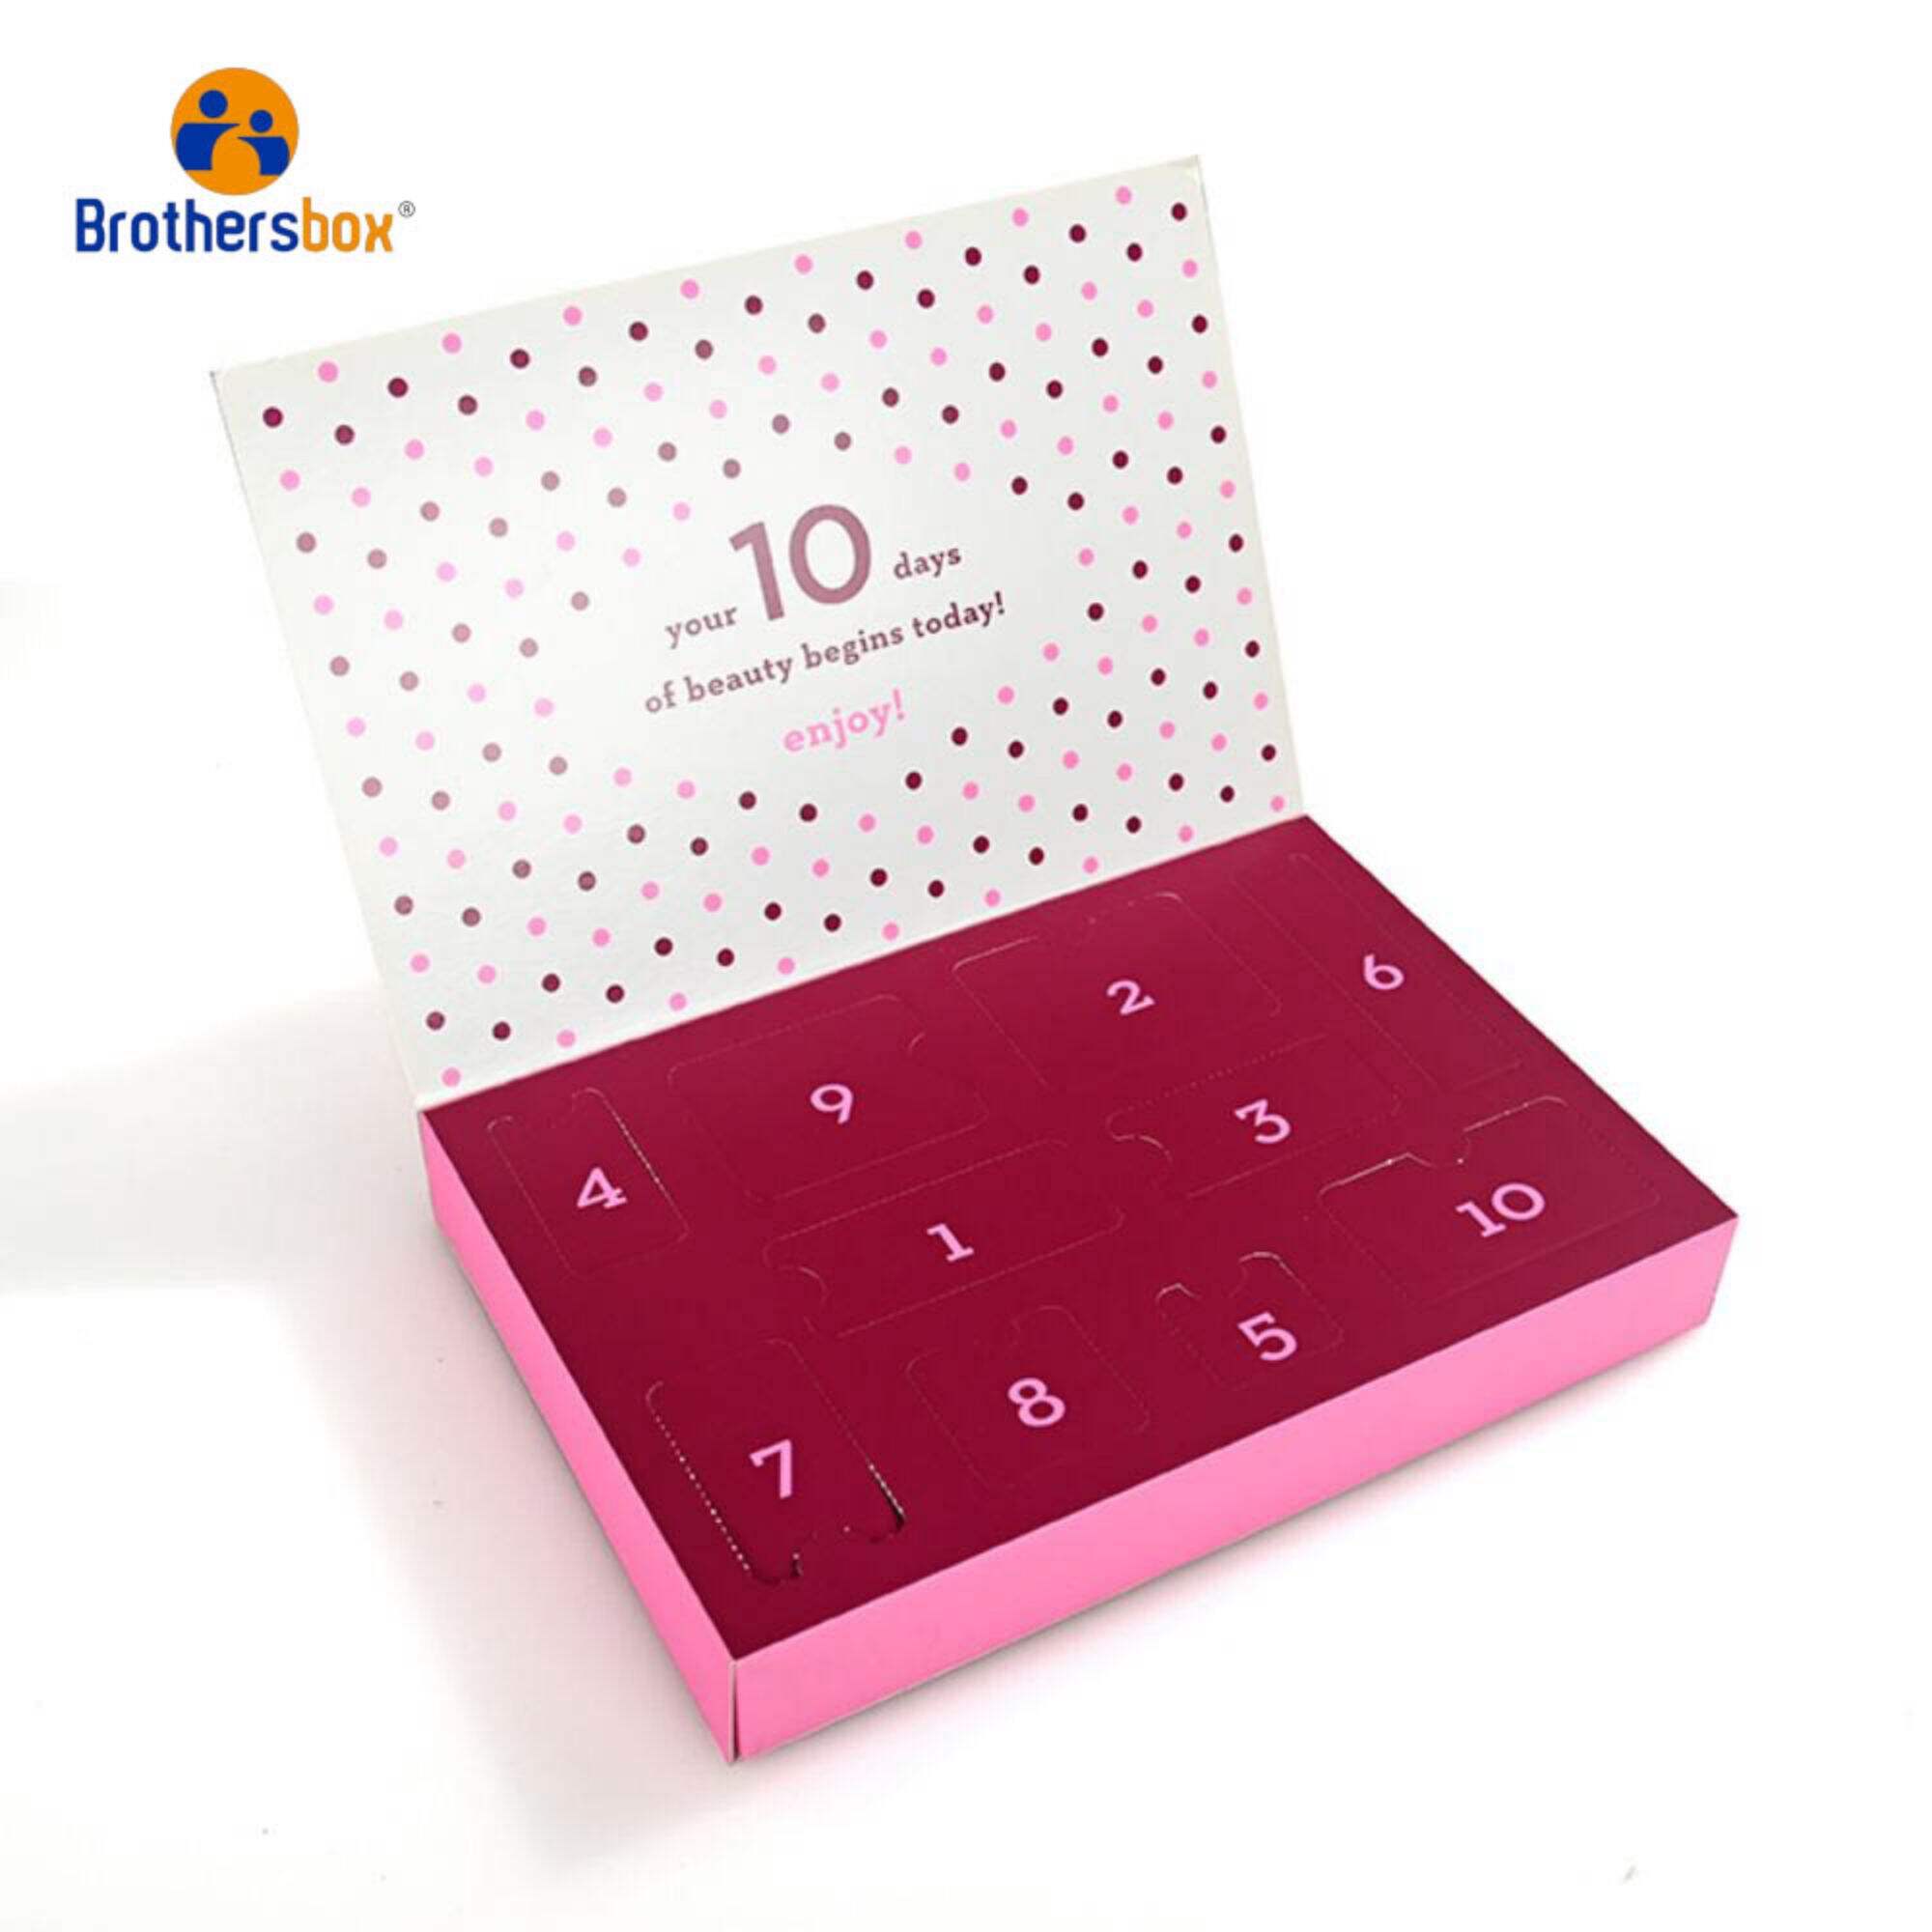 Zakázková krabice na balení kosmetických produktů adventního kalendáře